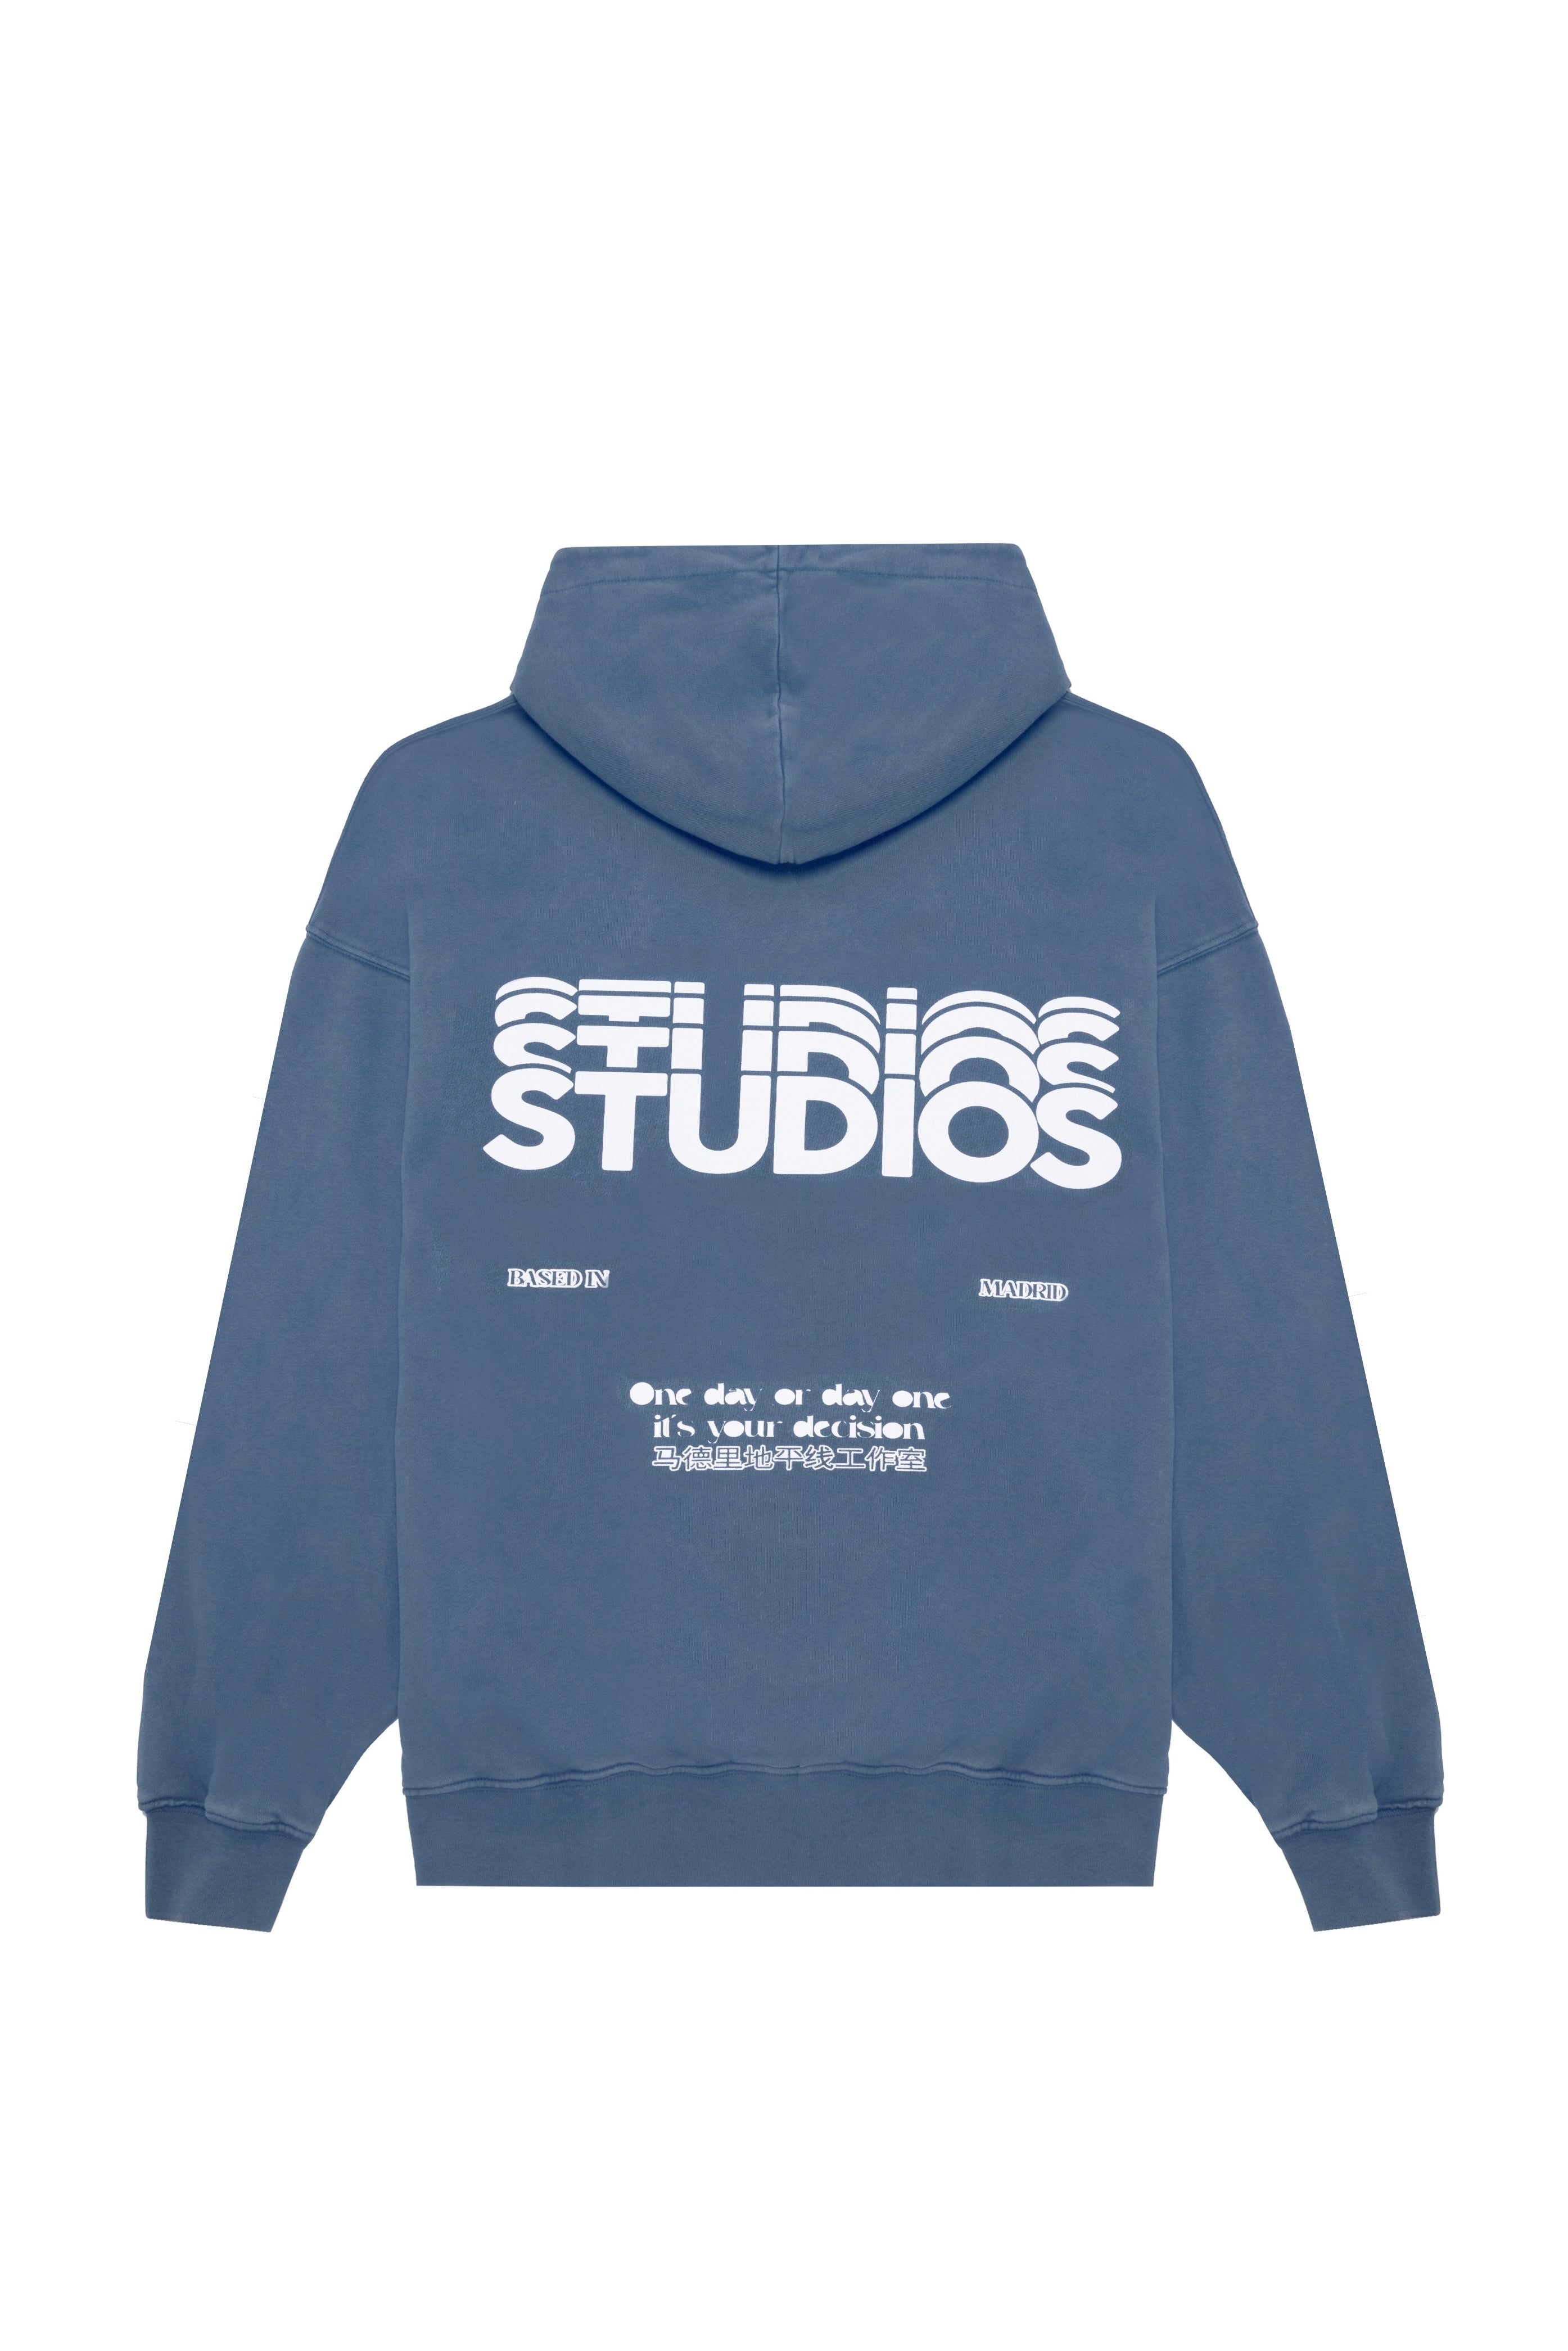 Steel Blue “Studios” Hoodie